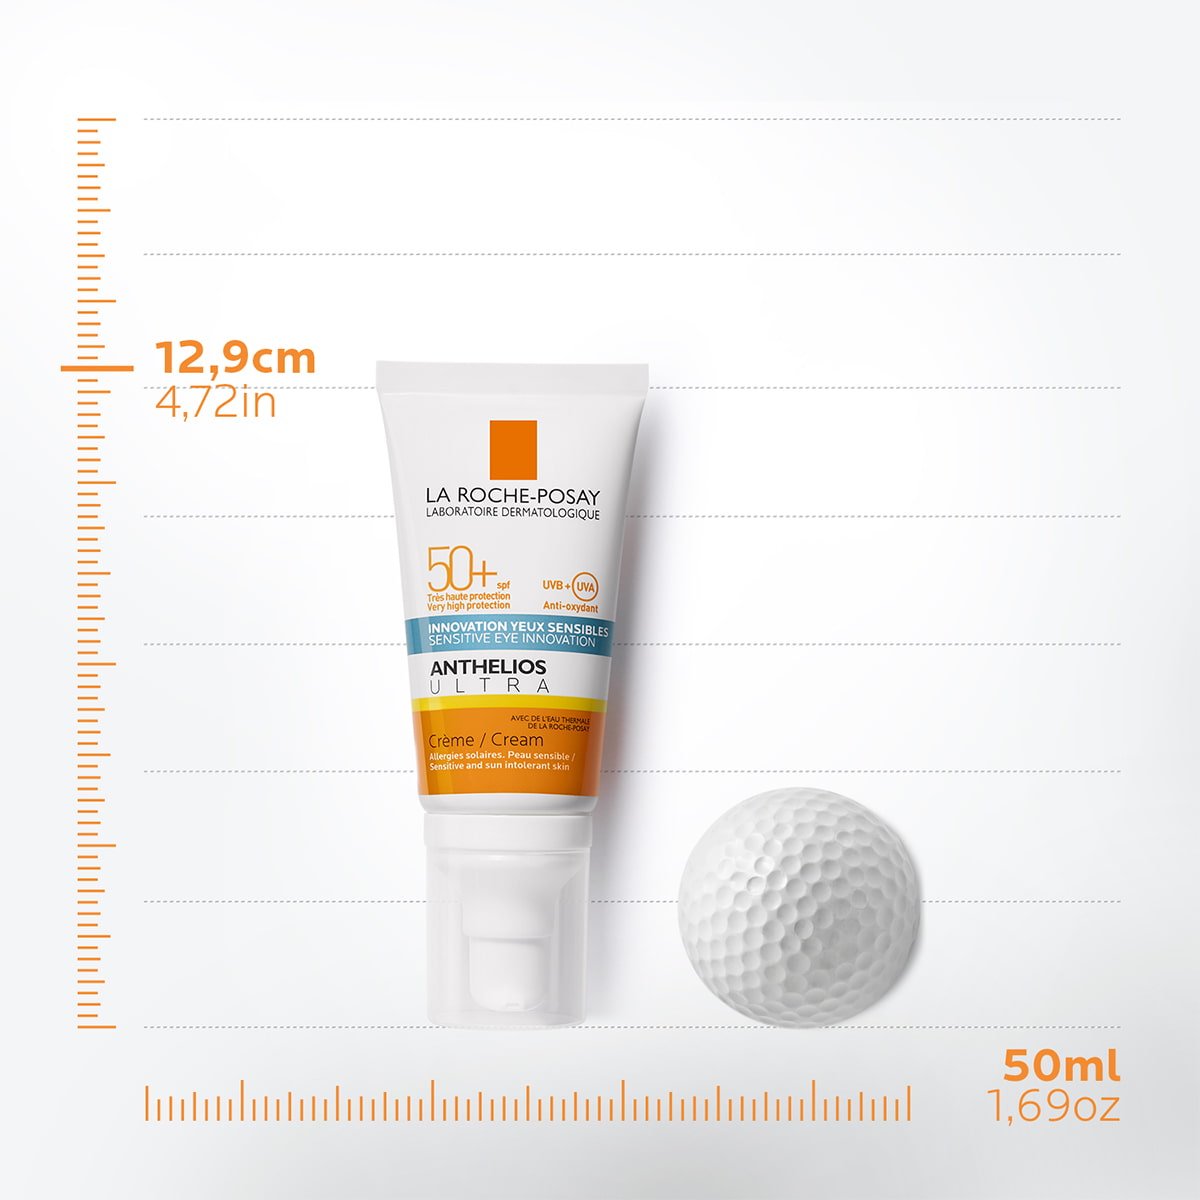 Confezione Anthelios ultra face cream SPF50+ da 50ml con pallina da golf accanto su assi cartesiani che indicano 12,9cm di altezza